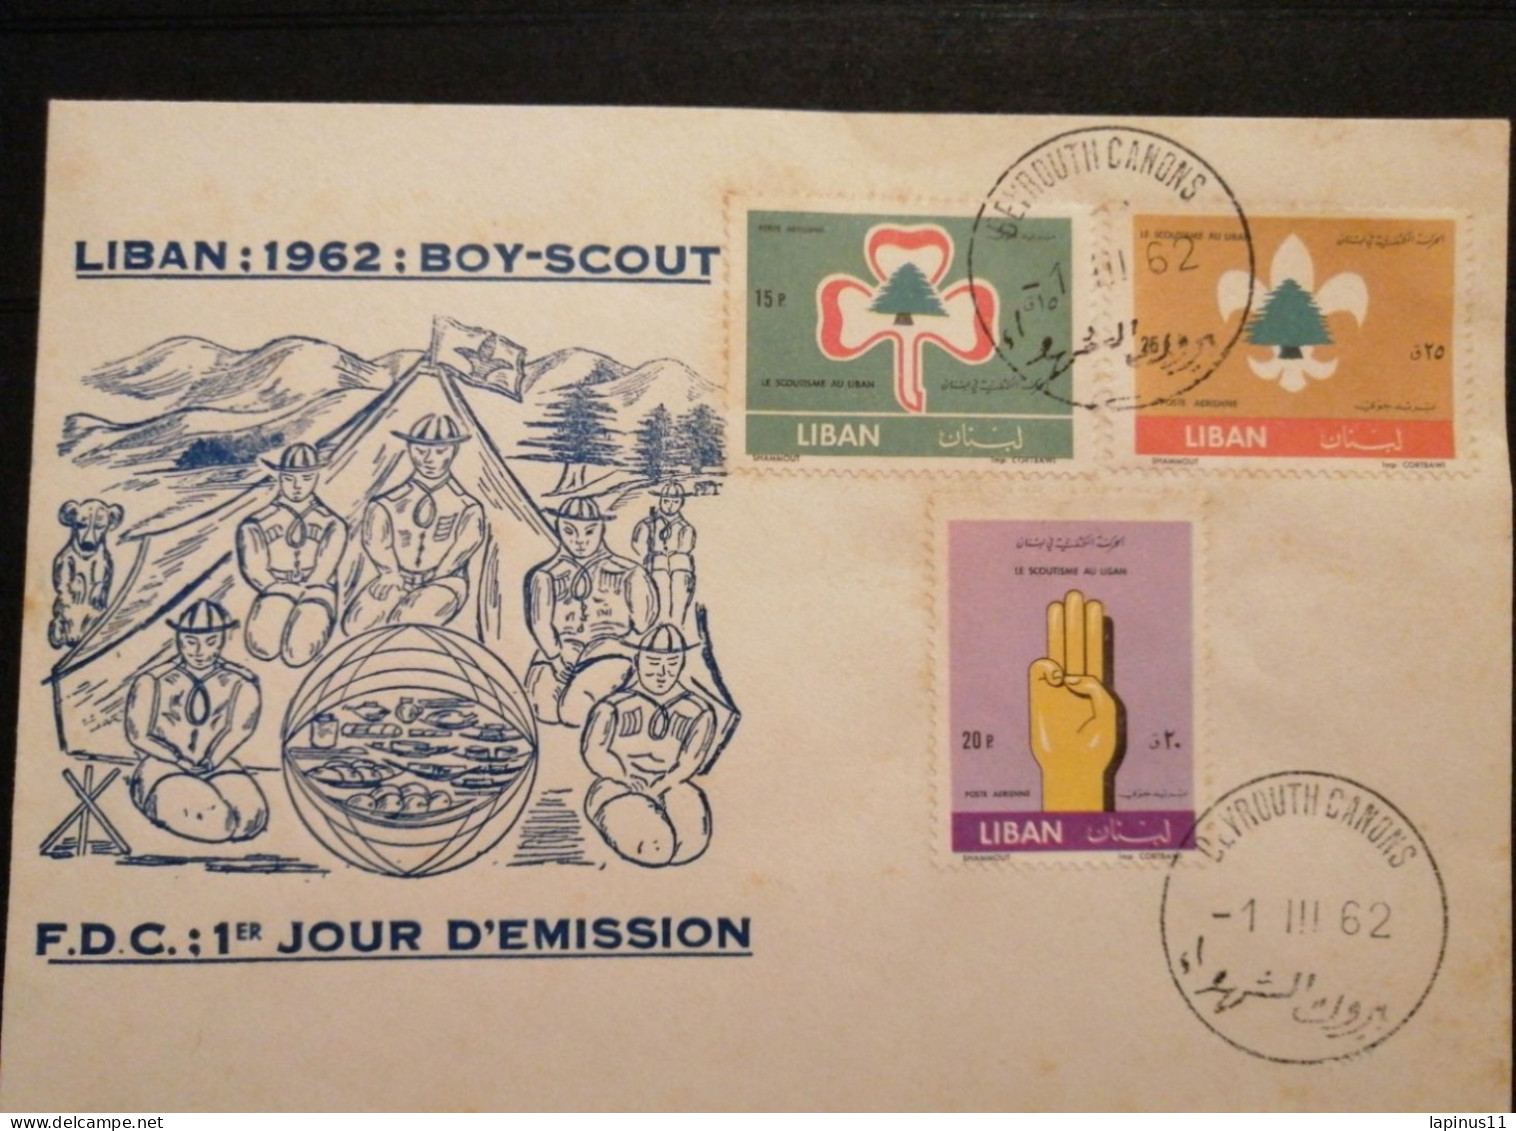 Liban Lebanon  Boy_ Scout 1962 FDC - Liban